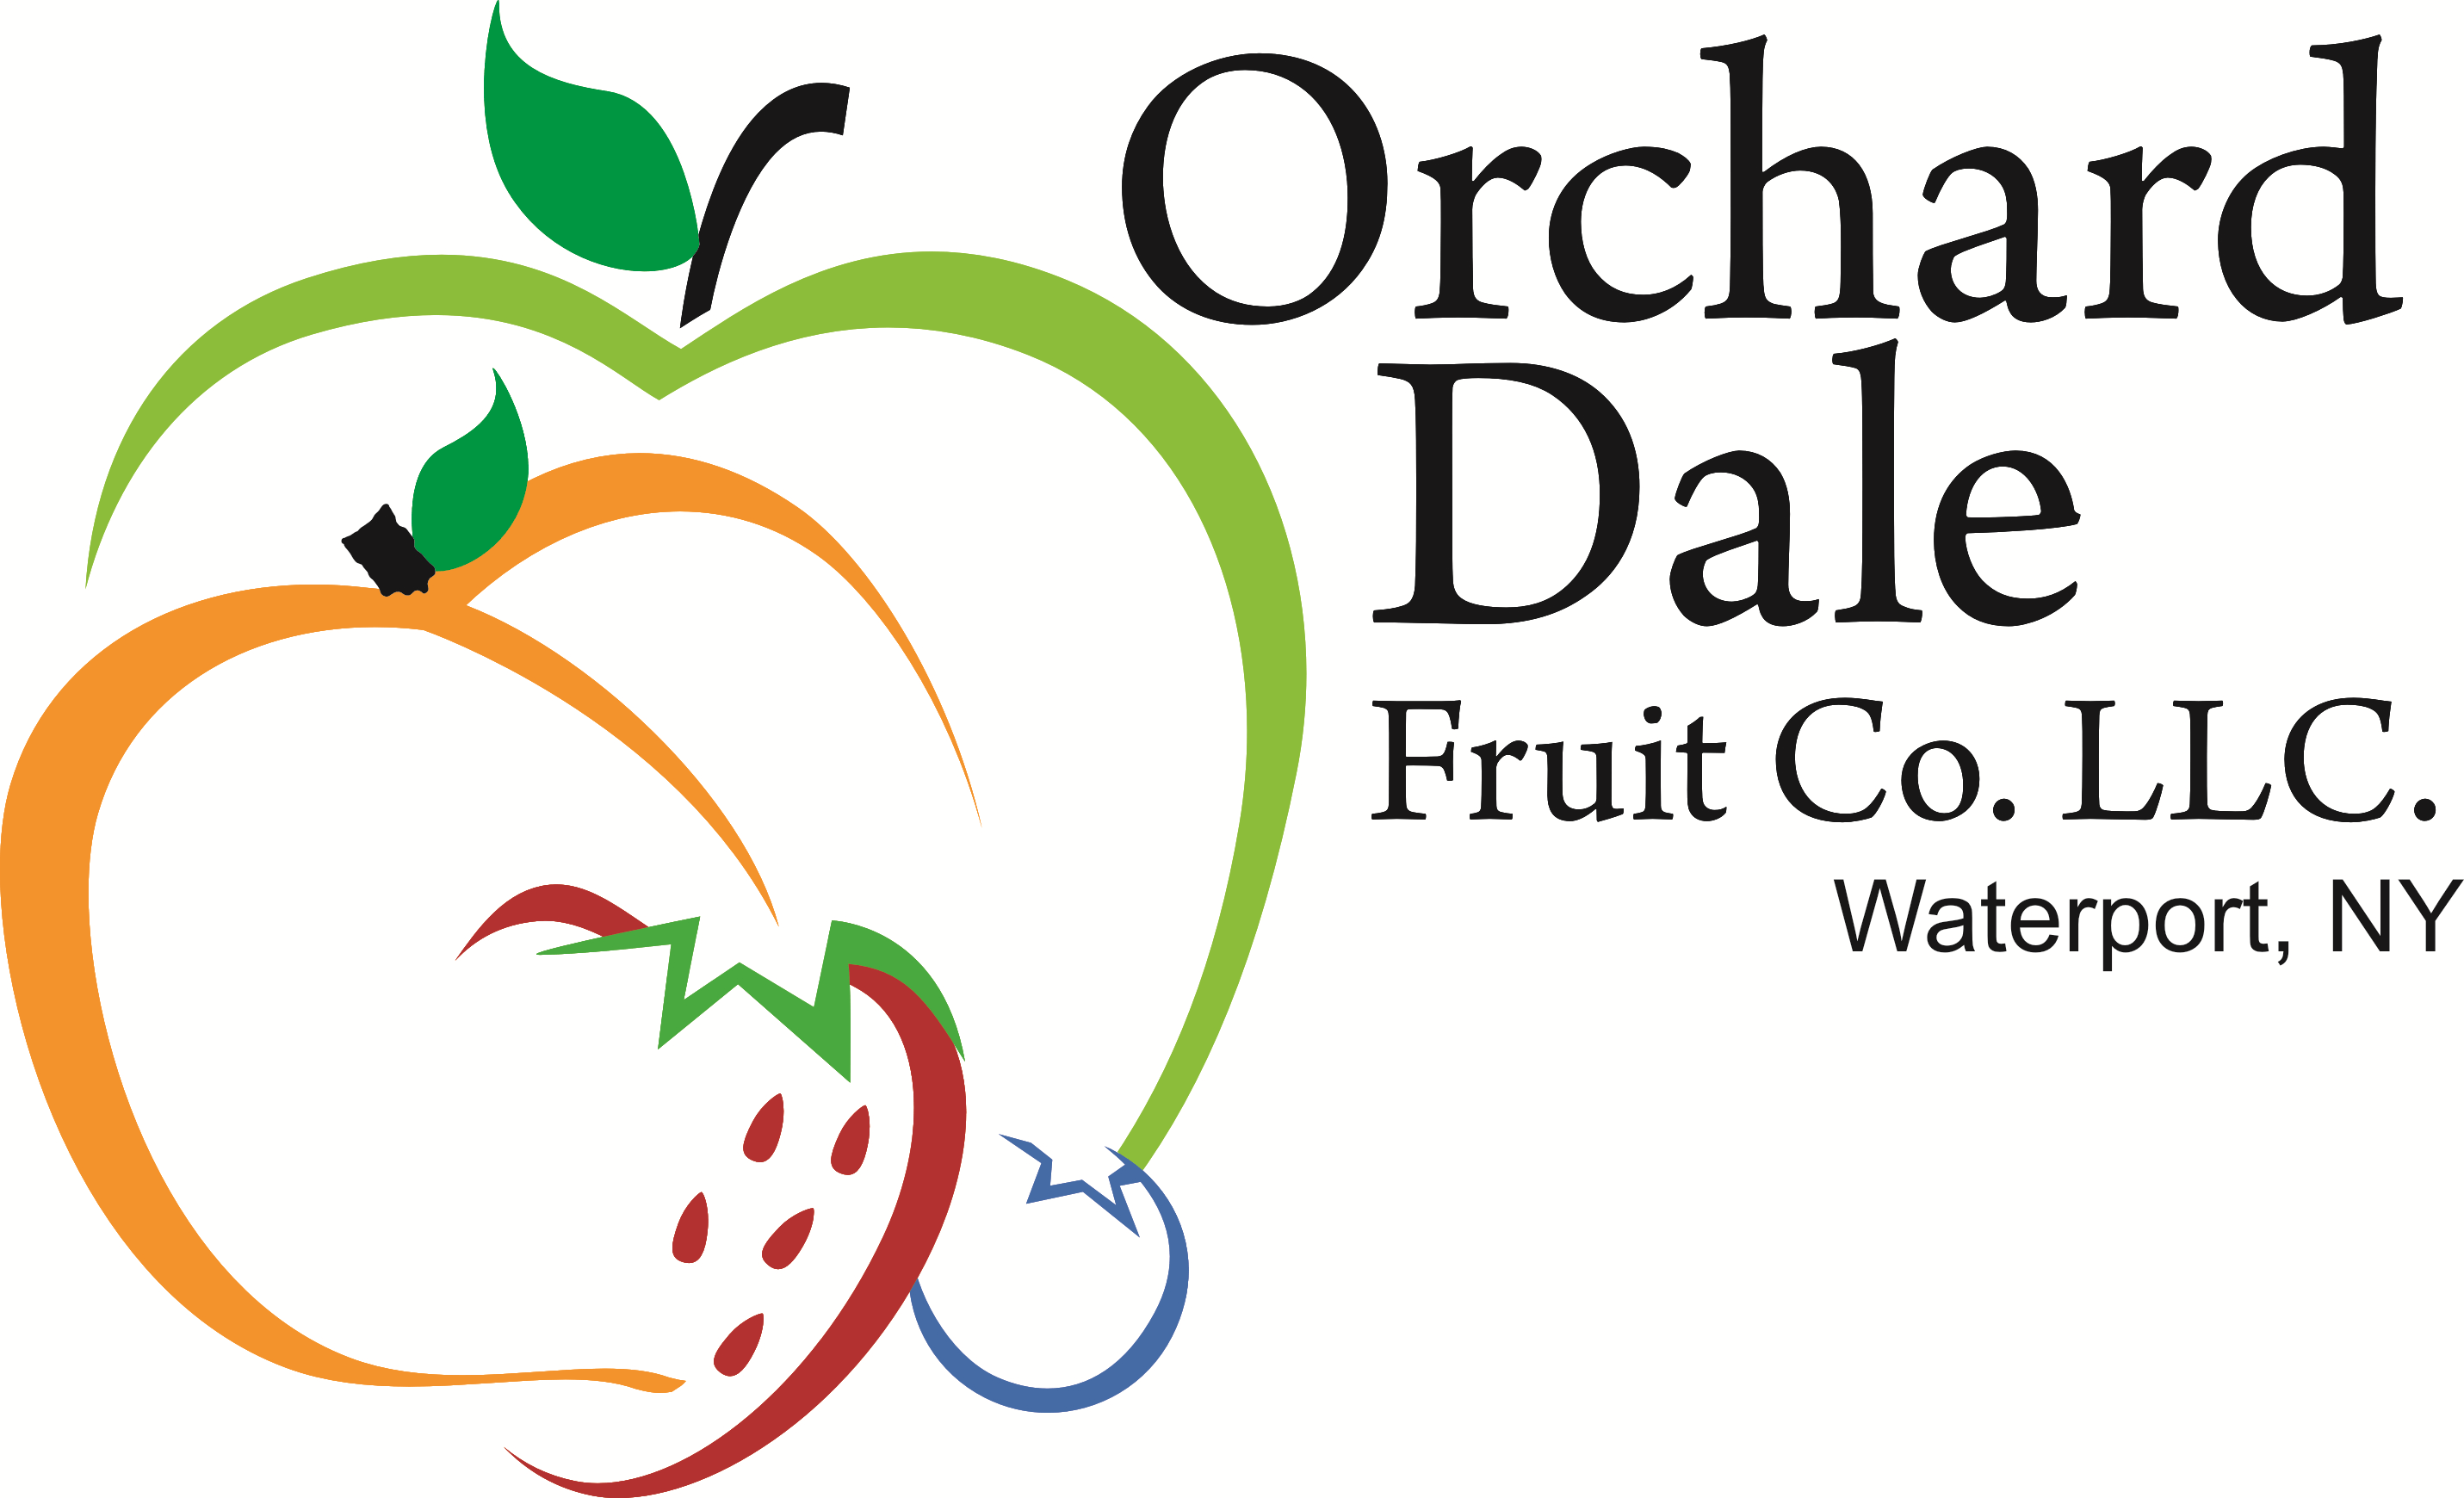 Logo fruits. Логотип фрукты. Эмблема для фруктов овощей. Логотип овощи фрукты. Логотипы фруктовых компаний.